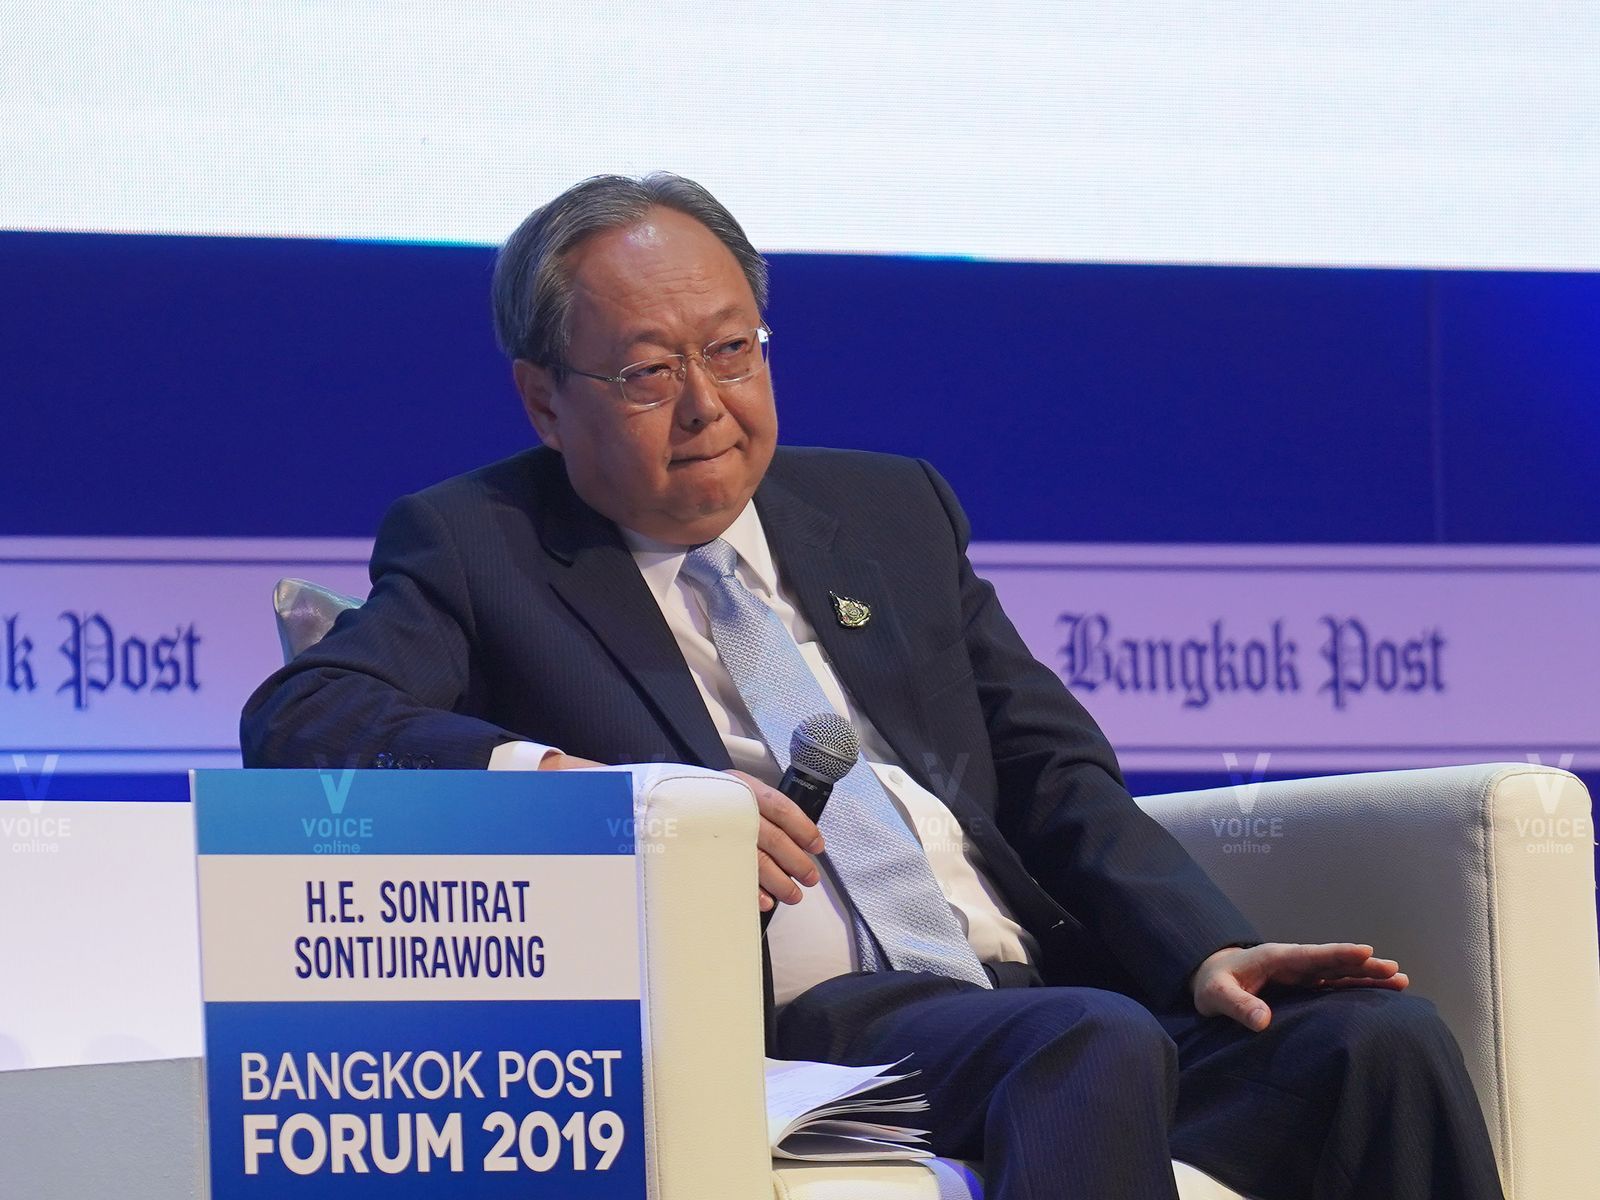 สุทธิรัตน์ สนธิจิรวงศ์-งาน Bangkok Post Forum 2019